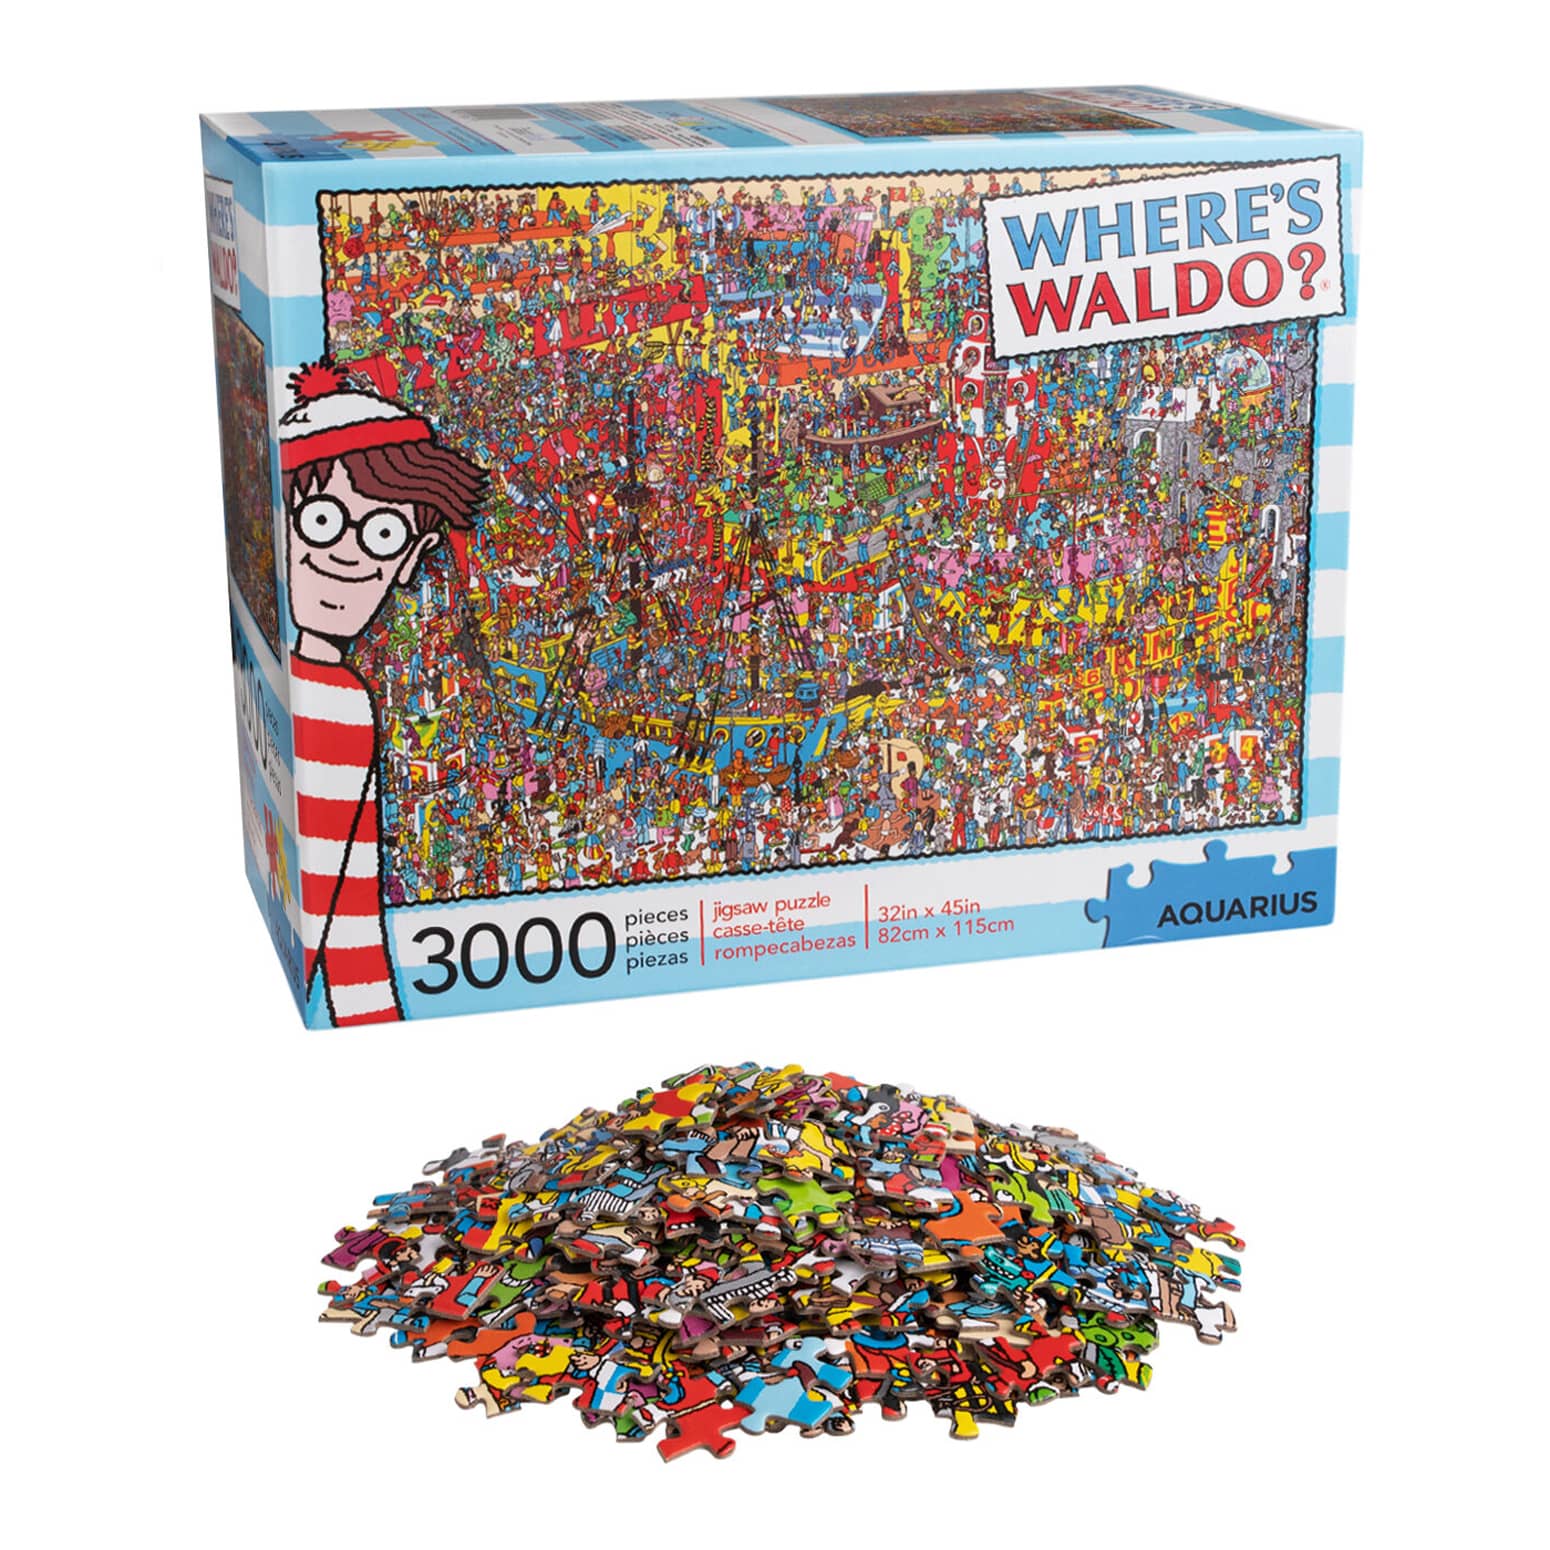 Where's Waldo Jigsaw Puzzle - 3,000 Pieces, 1 Waldo